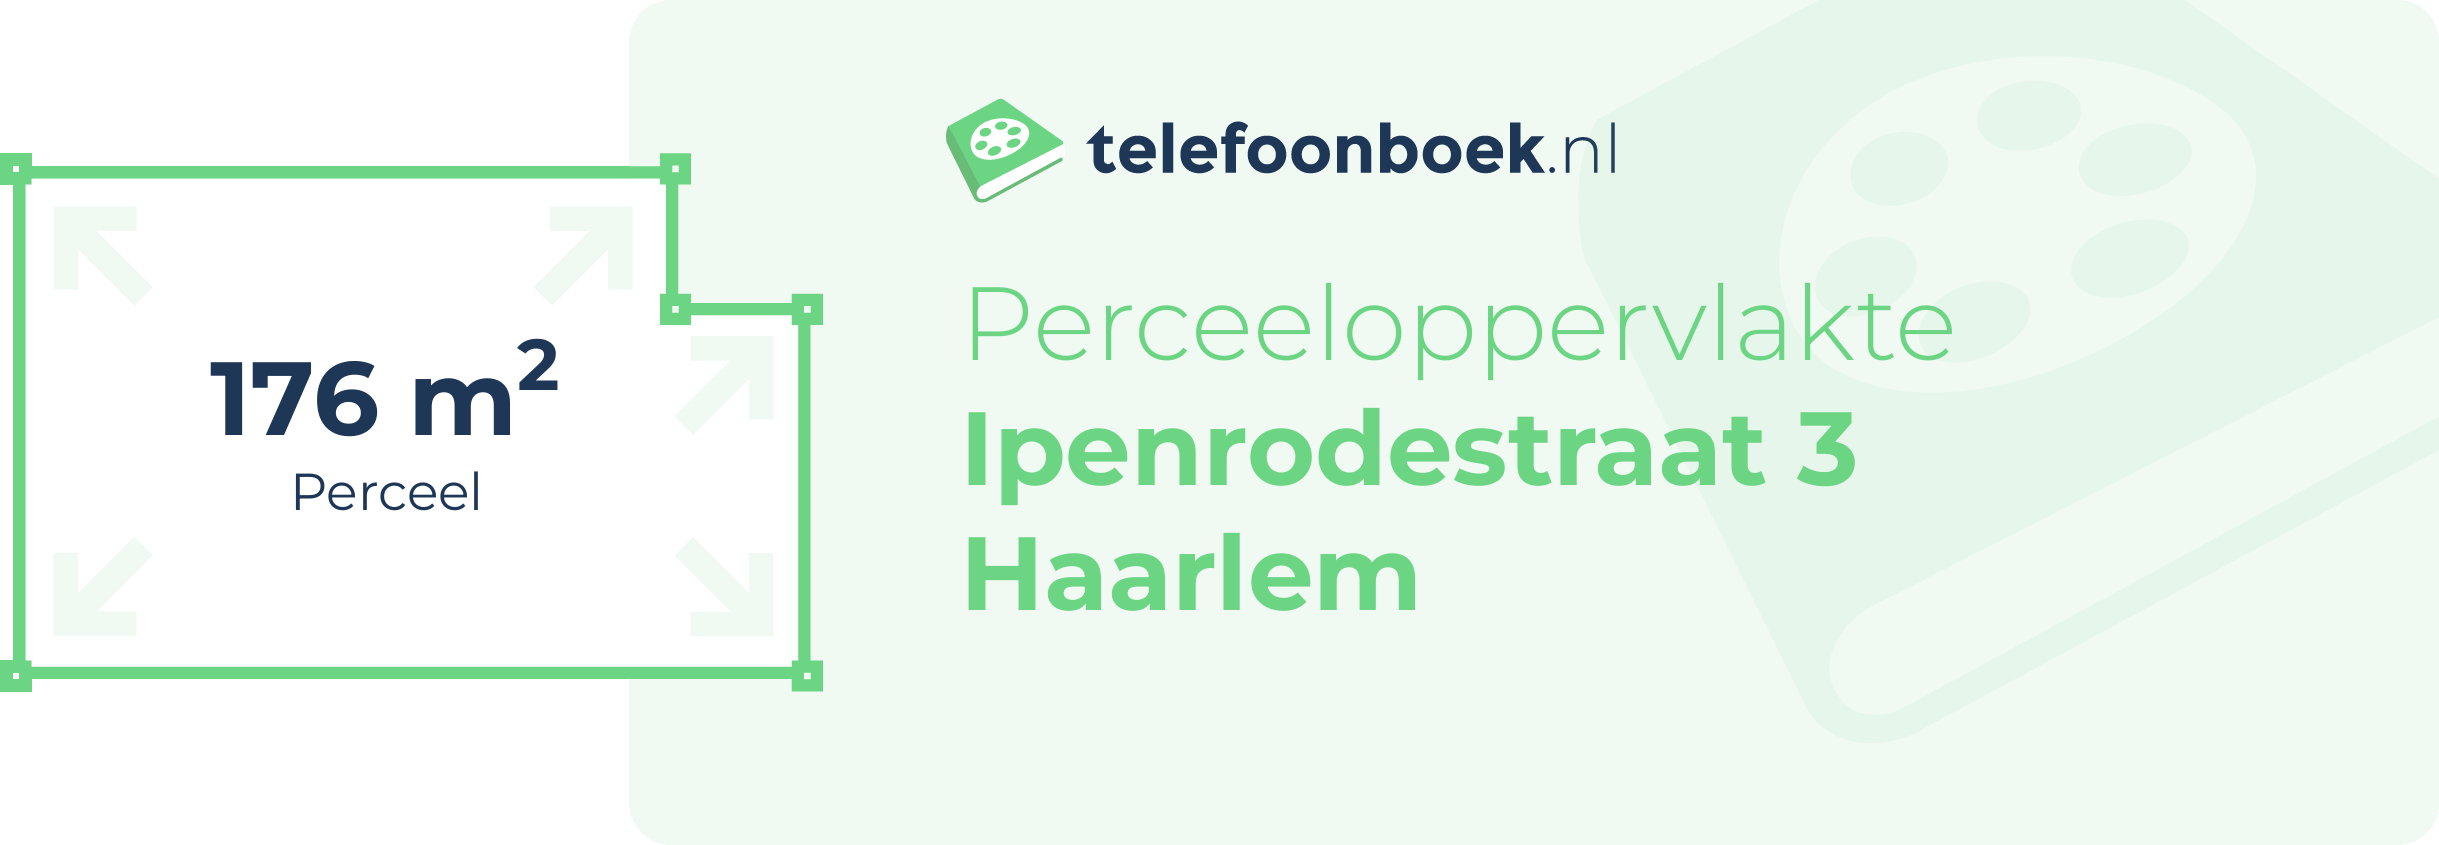 Perceeloppervlakte Ipenrodestraat 3 Haarlem